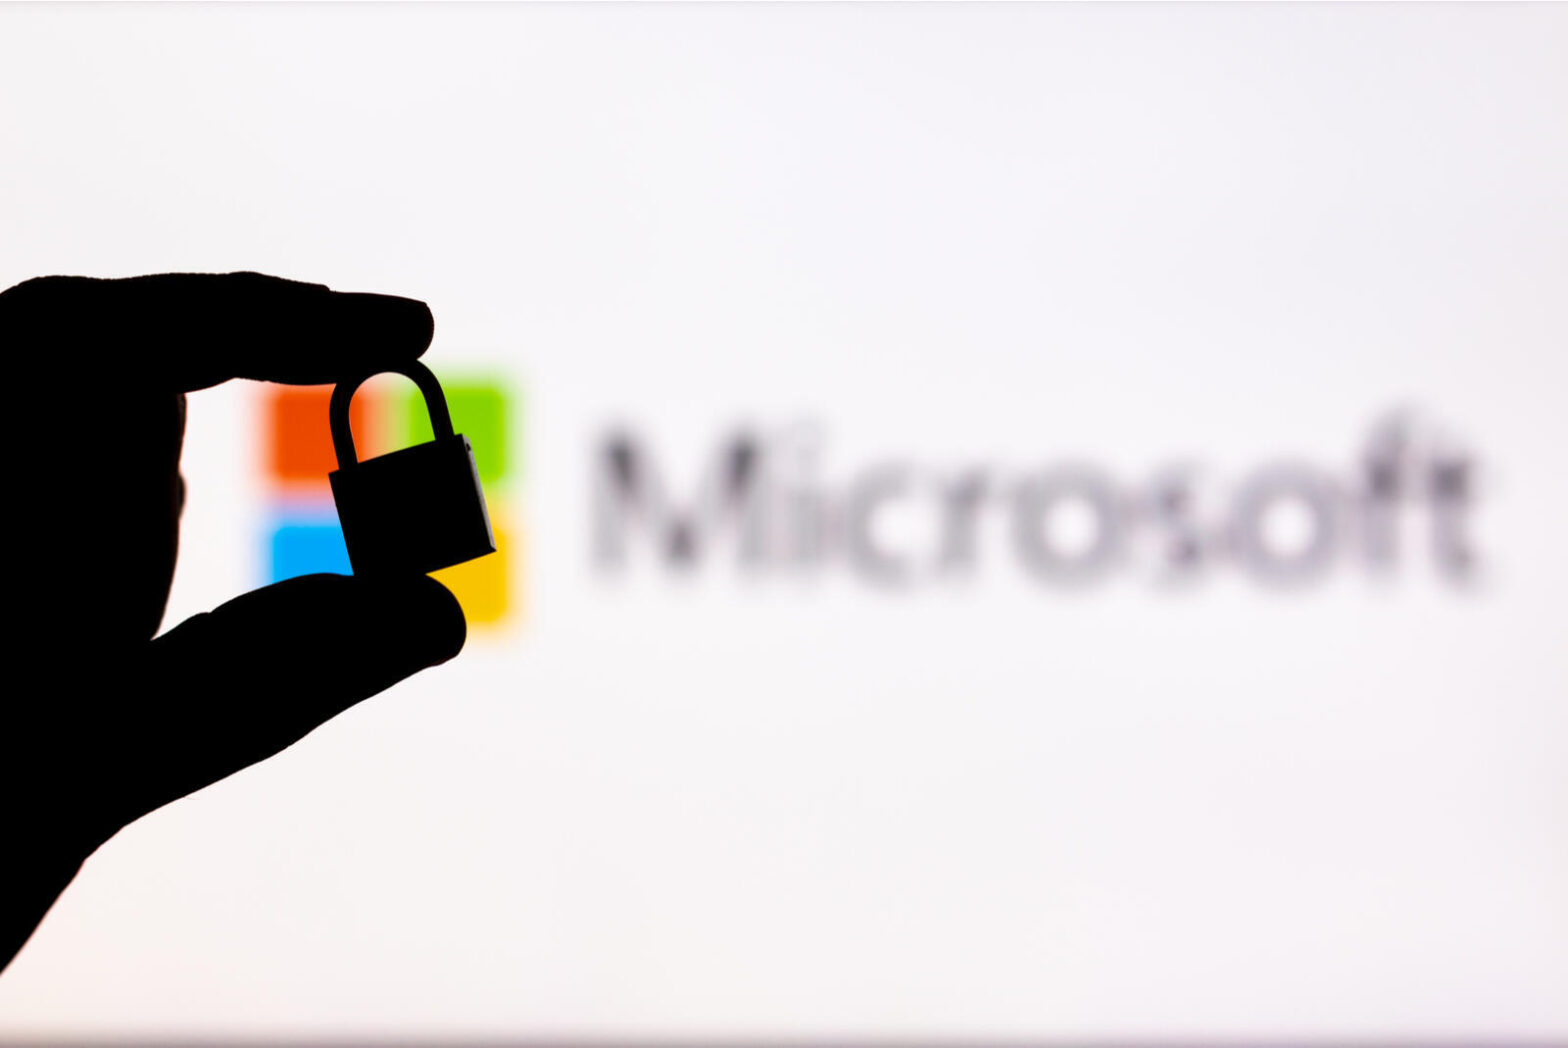 Patch Tuesday : Microsoft corrige une vulnérabilité déjà exploitée et six critiques